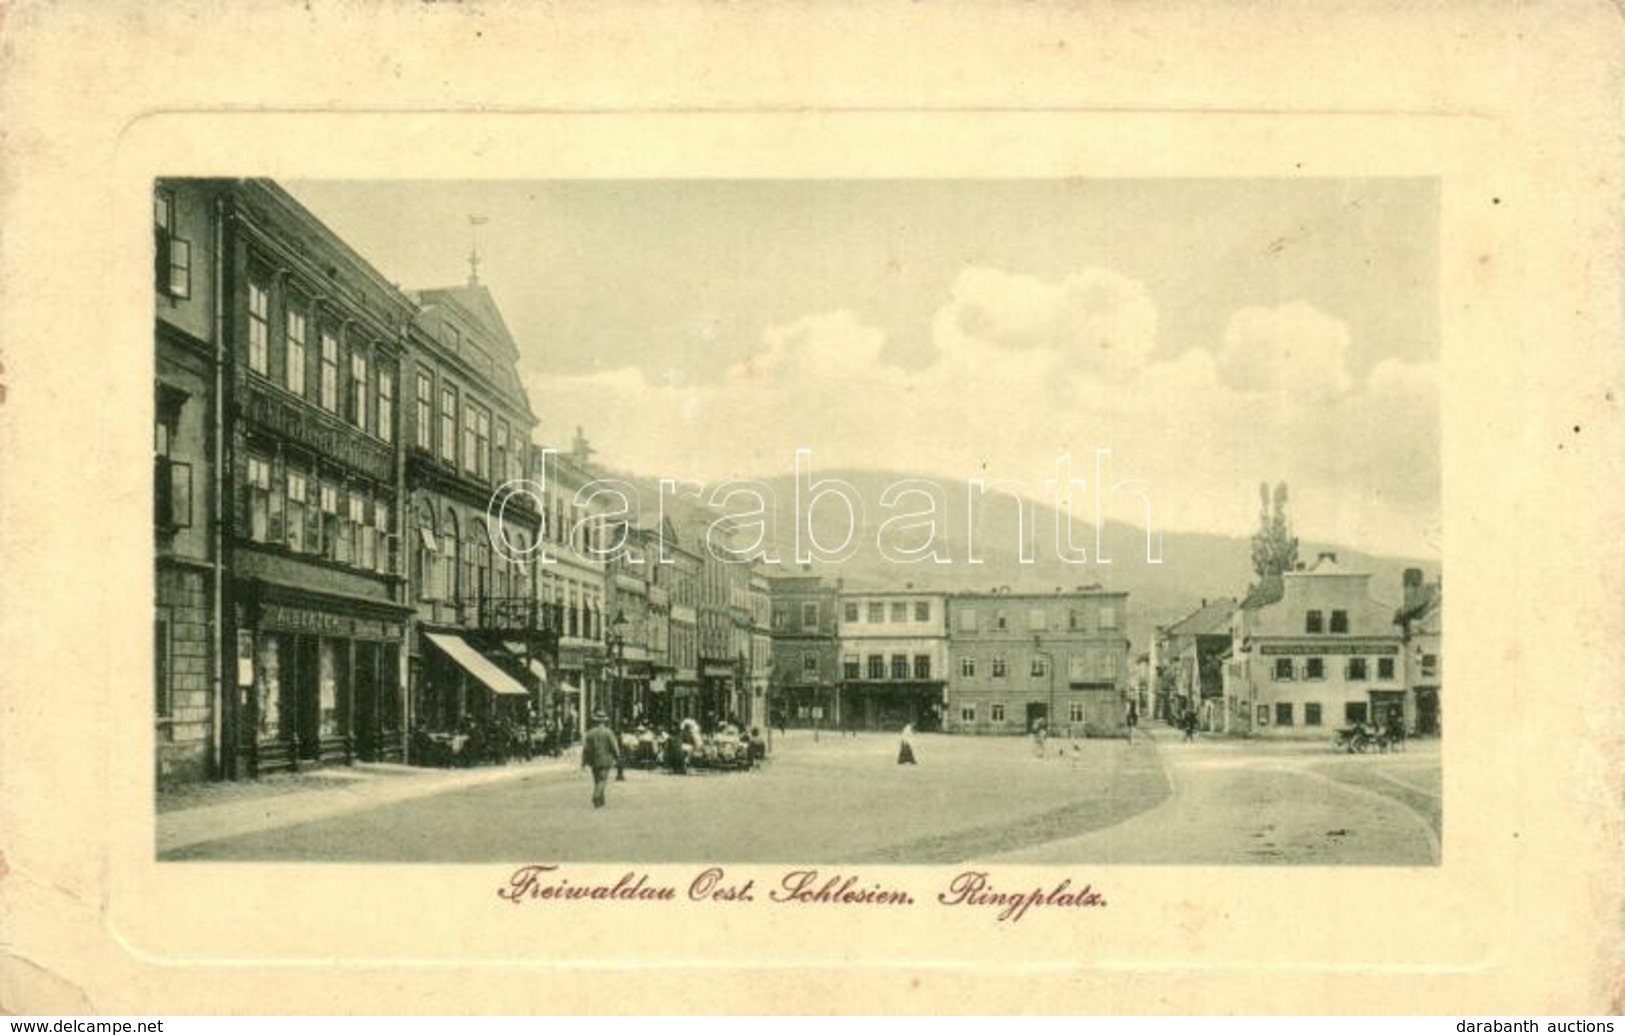 T2/T3 1925 Jeseník, Freiwaldau (Ost. Schlesien); Ringplatz / Square With A. Blazen's Shop And Guest House. W.L. Bp. 3318 - Non Classificati